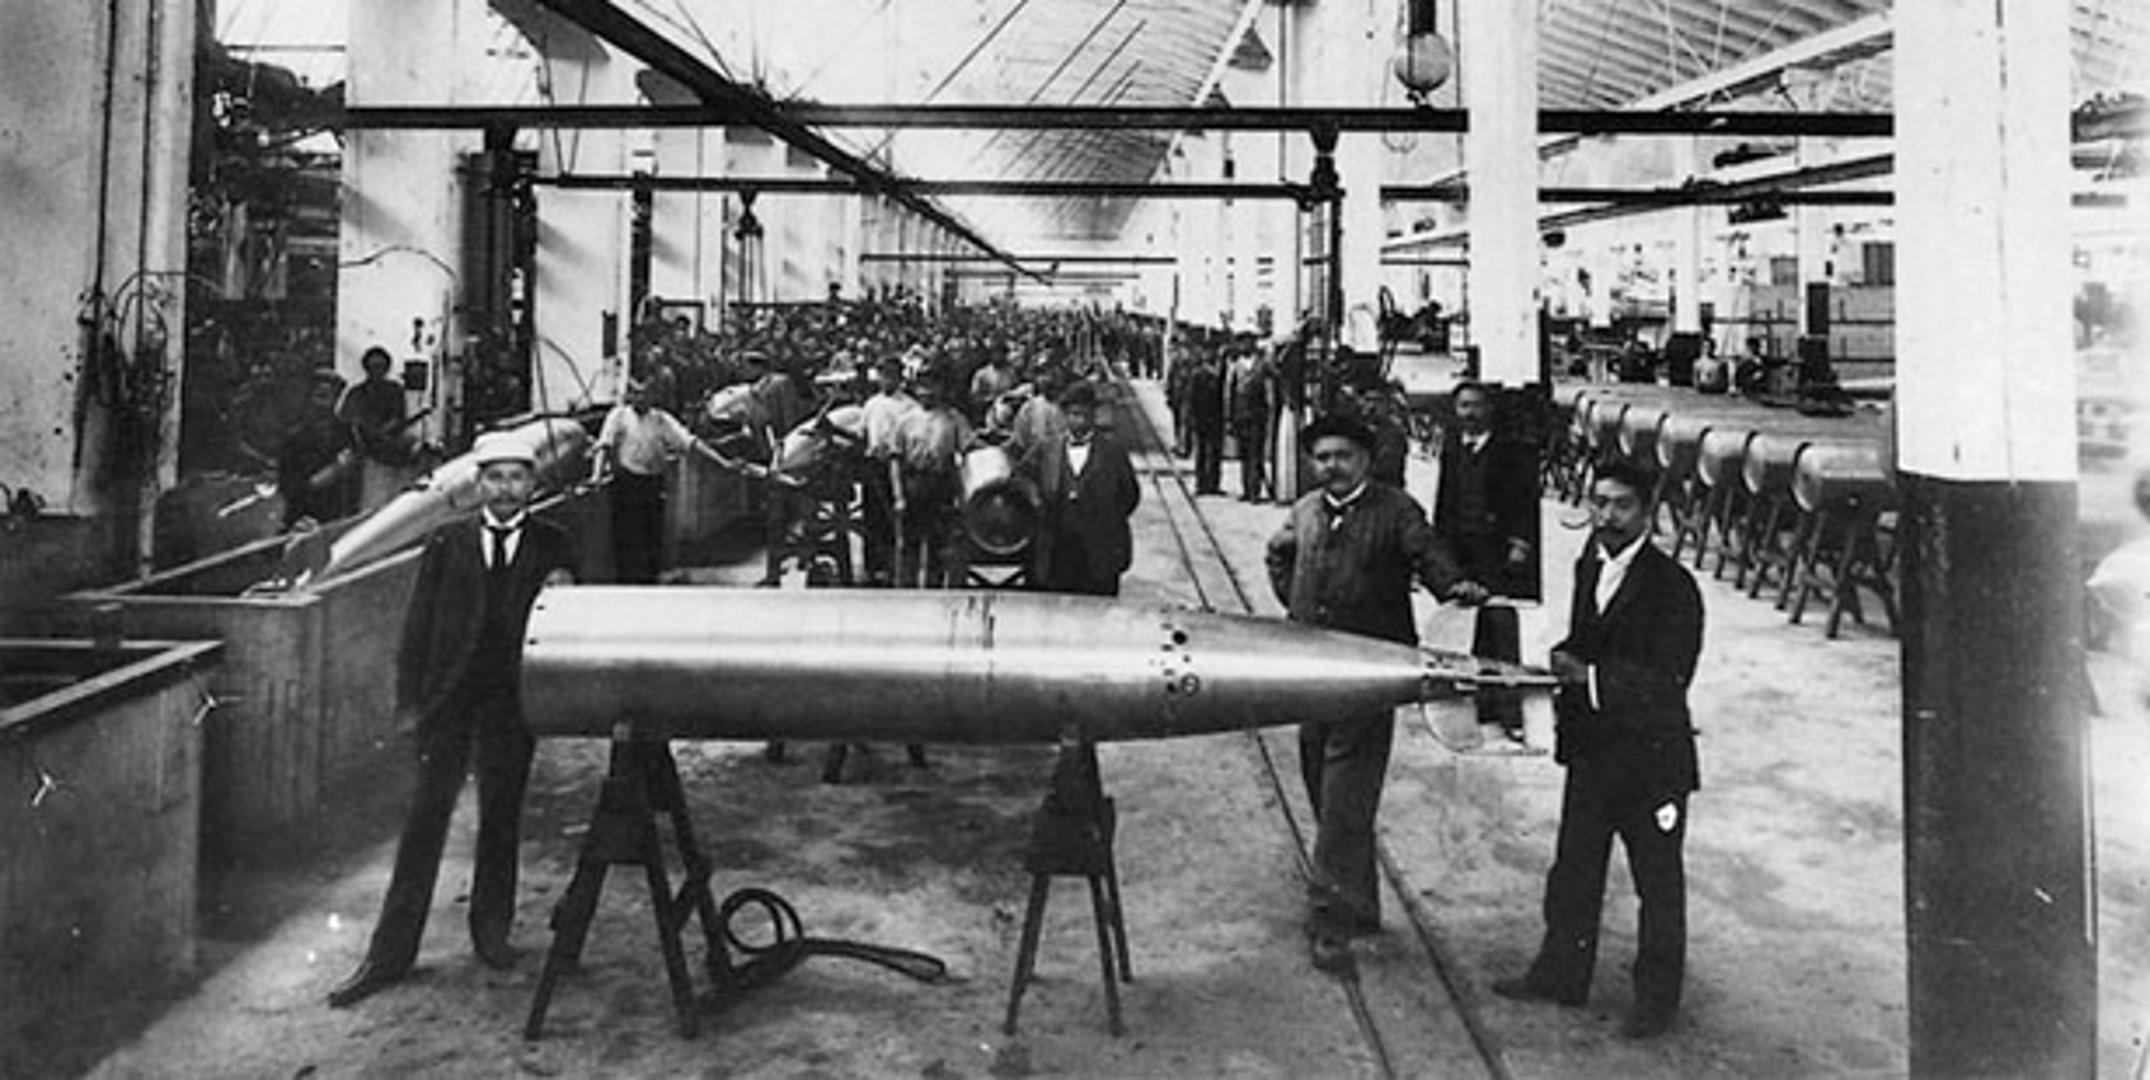 11. Izumitelj torpeda bio je Ivan Lupis, hrvatski inženjer, u suradnji s Robertom Whiteheadom tijekom 19. stoljeća.